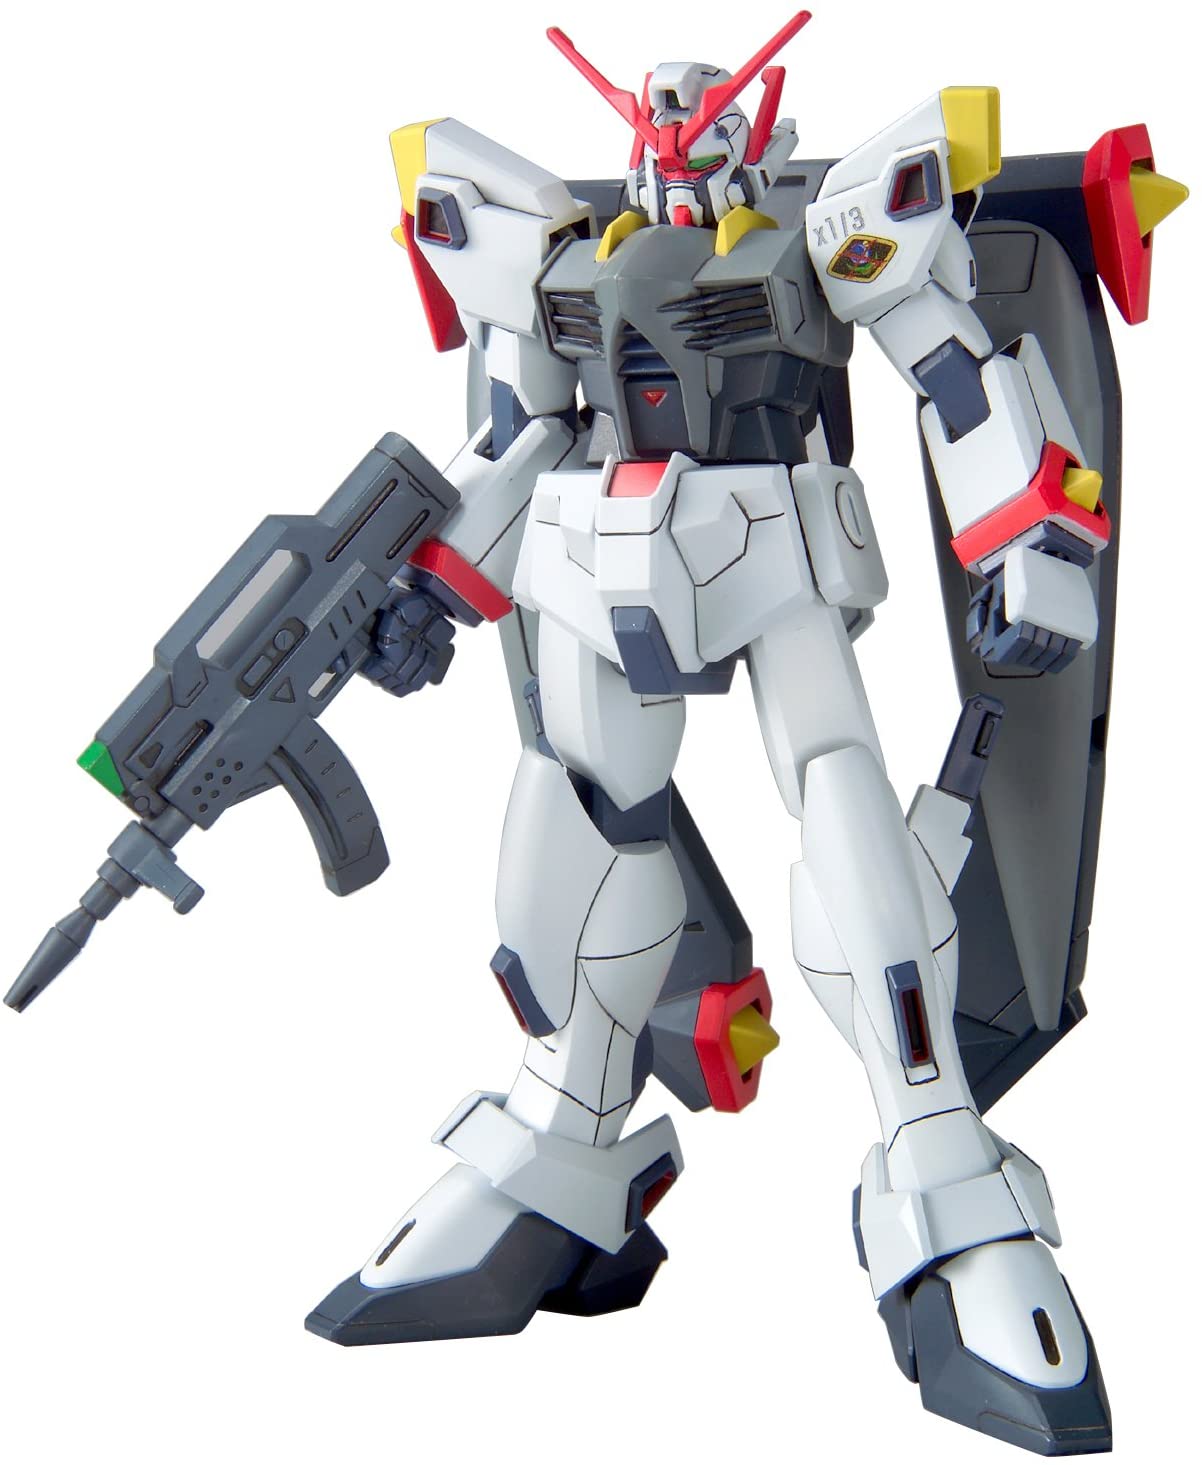 Gundam 1/144 HG Seed MSV #04 CAT1-X1/3 Hyperion Gundam Model Kit